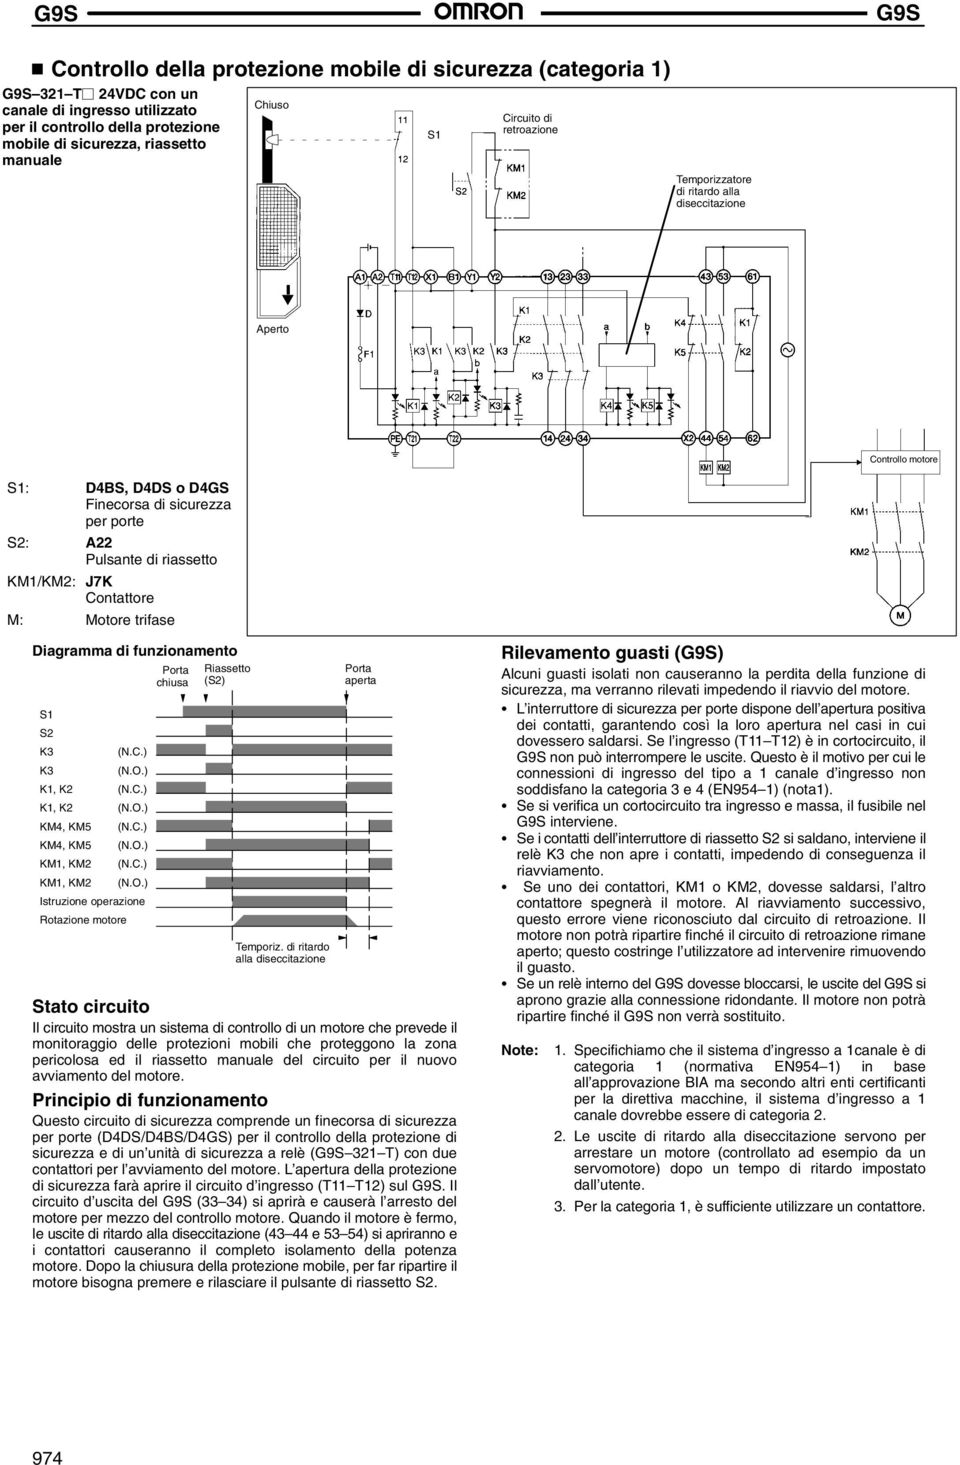 Motore trifase Diagramma di funzionamento S1 S2 K3 (N.C.) K3 (N.O.) K1, K2 (N.C.) K1, K2 (N.O.) KM4, KM5 (N.C.) KM4, KM5 (N.O.) KM1, KM2 (N.C.) KM1, KM2 (N.O.) Istruzione operazione Rotazione motore Porta chiusa Riassetto (S2) Temporiz.